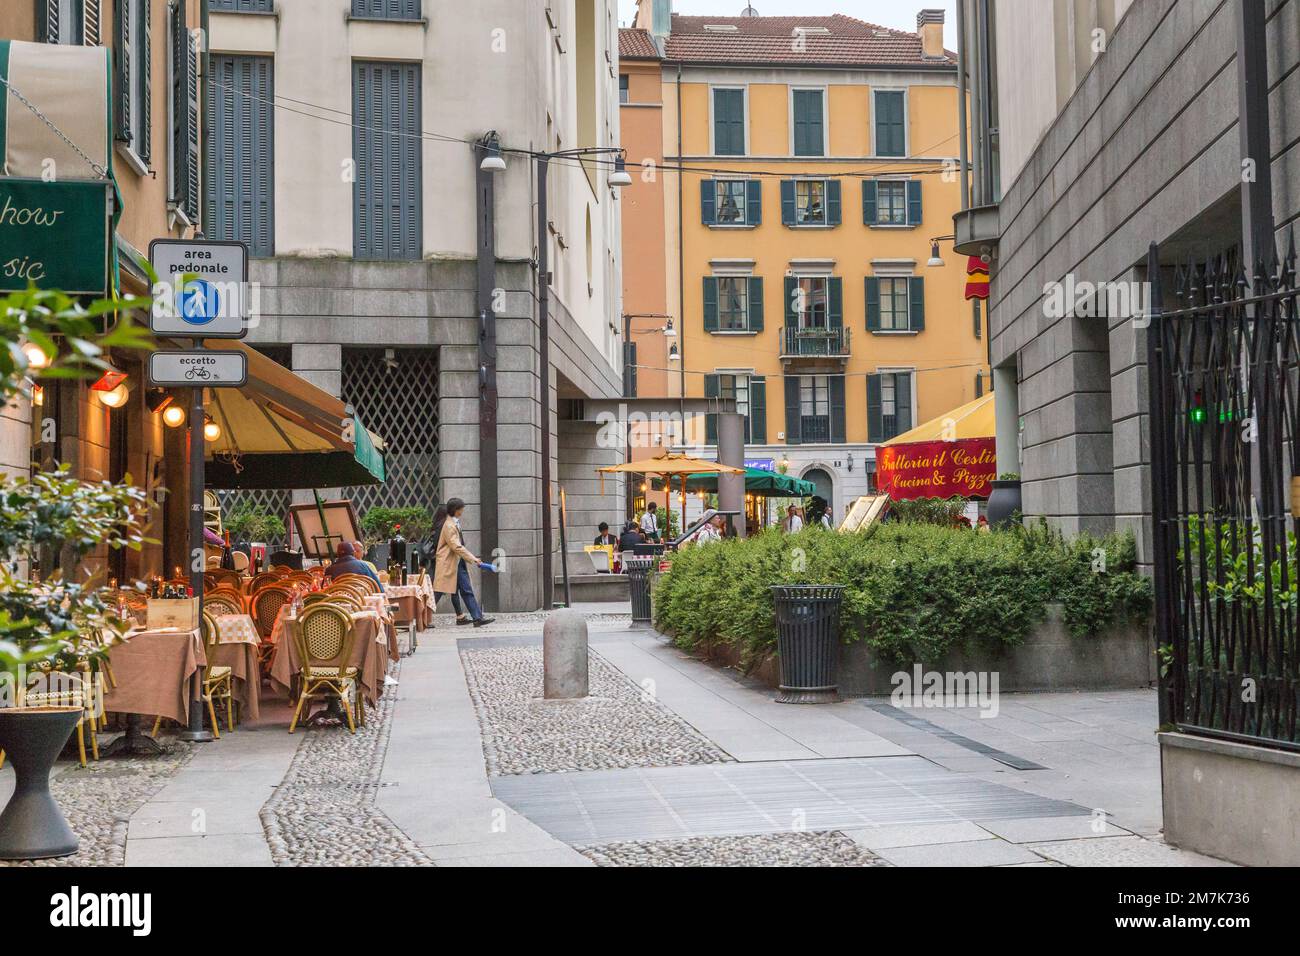 MILAN, ITALIE - 15 MAI 2018: C'est l'une des rues piétonnes du quartier de Brera, qui est l'un des quartiers les plus populaires de la ville pour se détendre. Banque D'Images